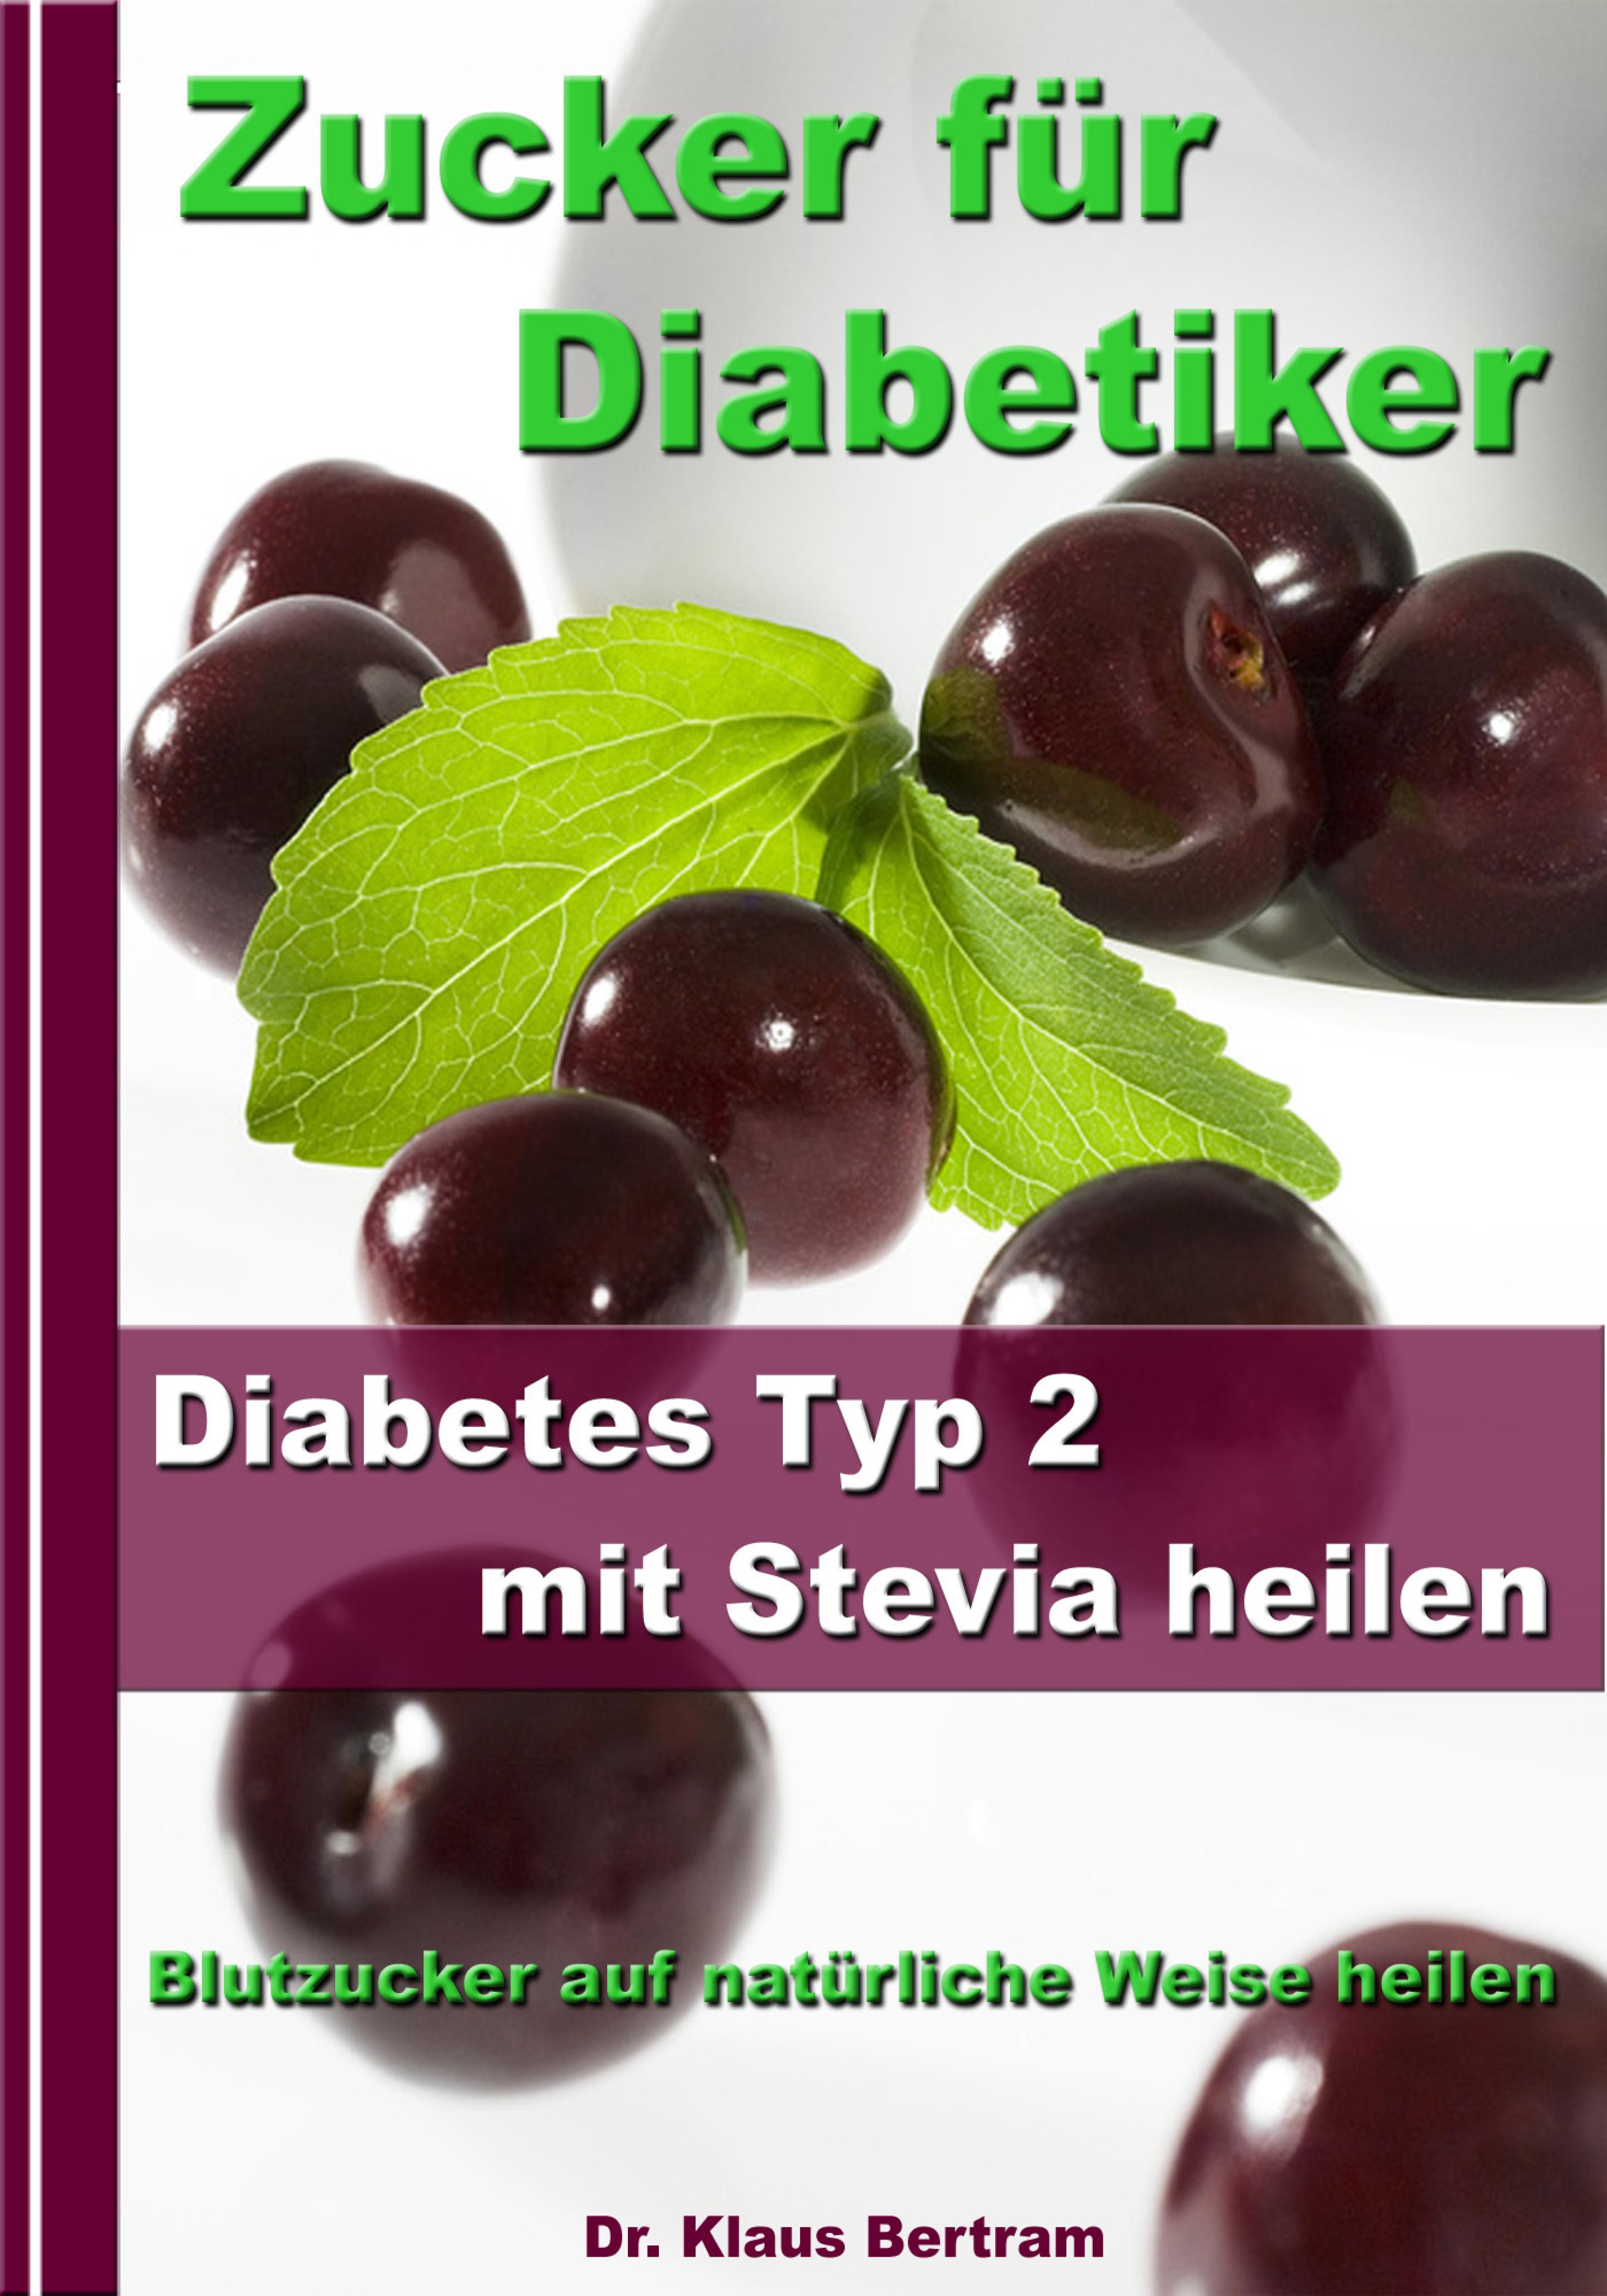 Dr. Klaus Bertram Zucker für Diabetiker - Diabetes Typ 2 mit Stevia heilen - Blutzucker auf natürliche Weise senken